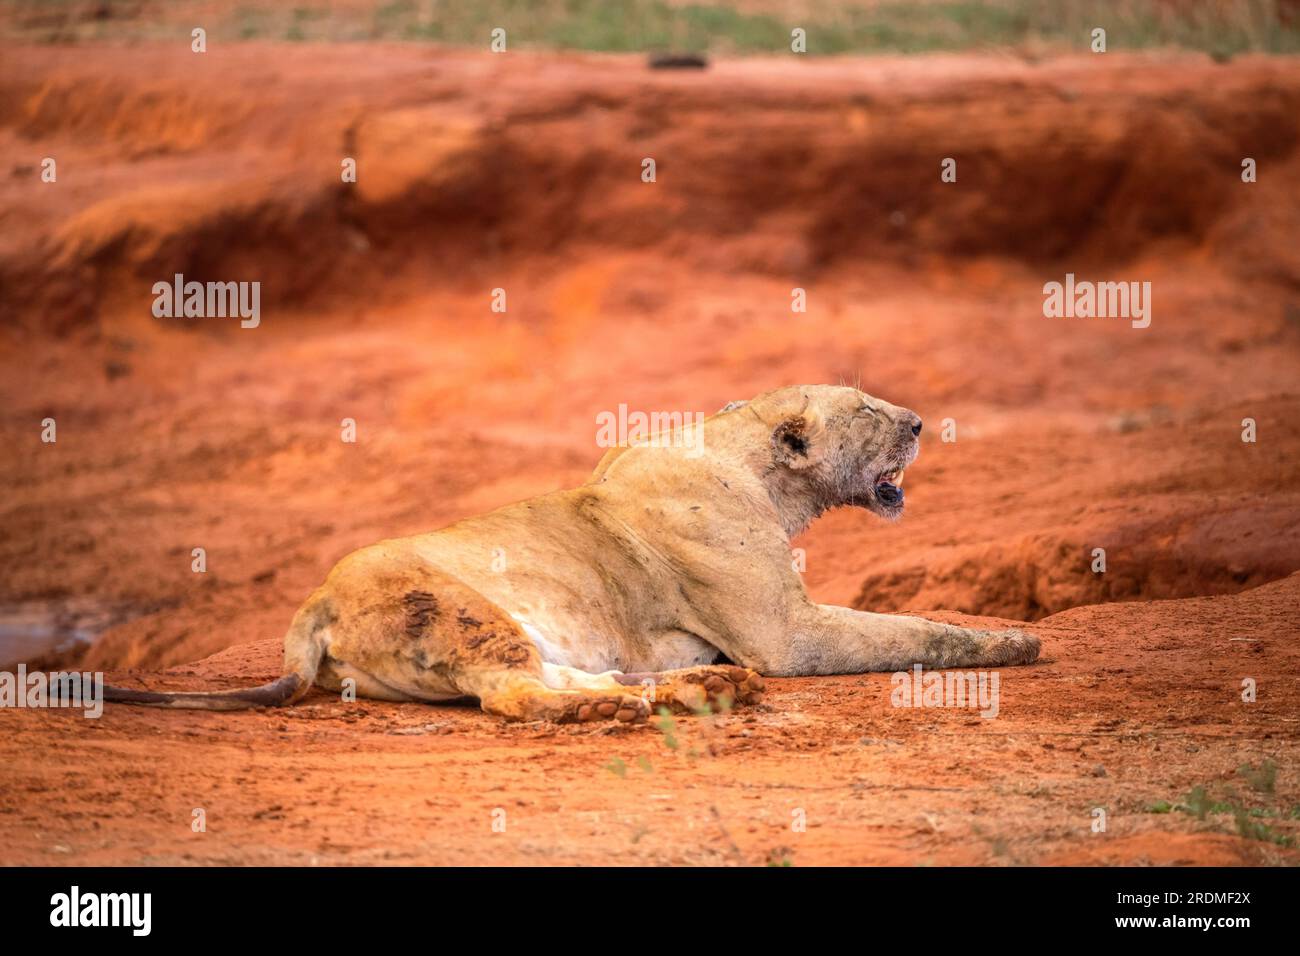 Una famiglia di leoni con i loro cuccioli, fotografata in Kenya, Africa in un safari attraverso la savana dei parchi nazionali. Immagini di una partita mattutina Foto Stock